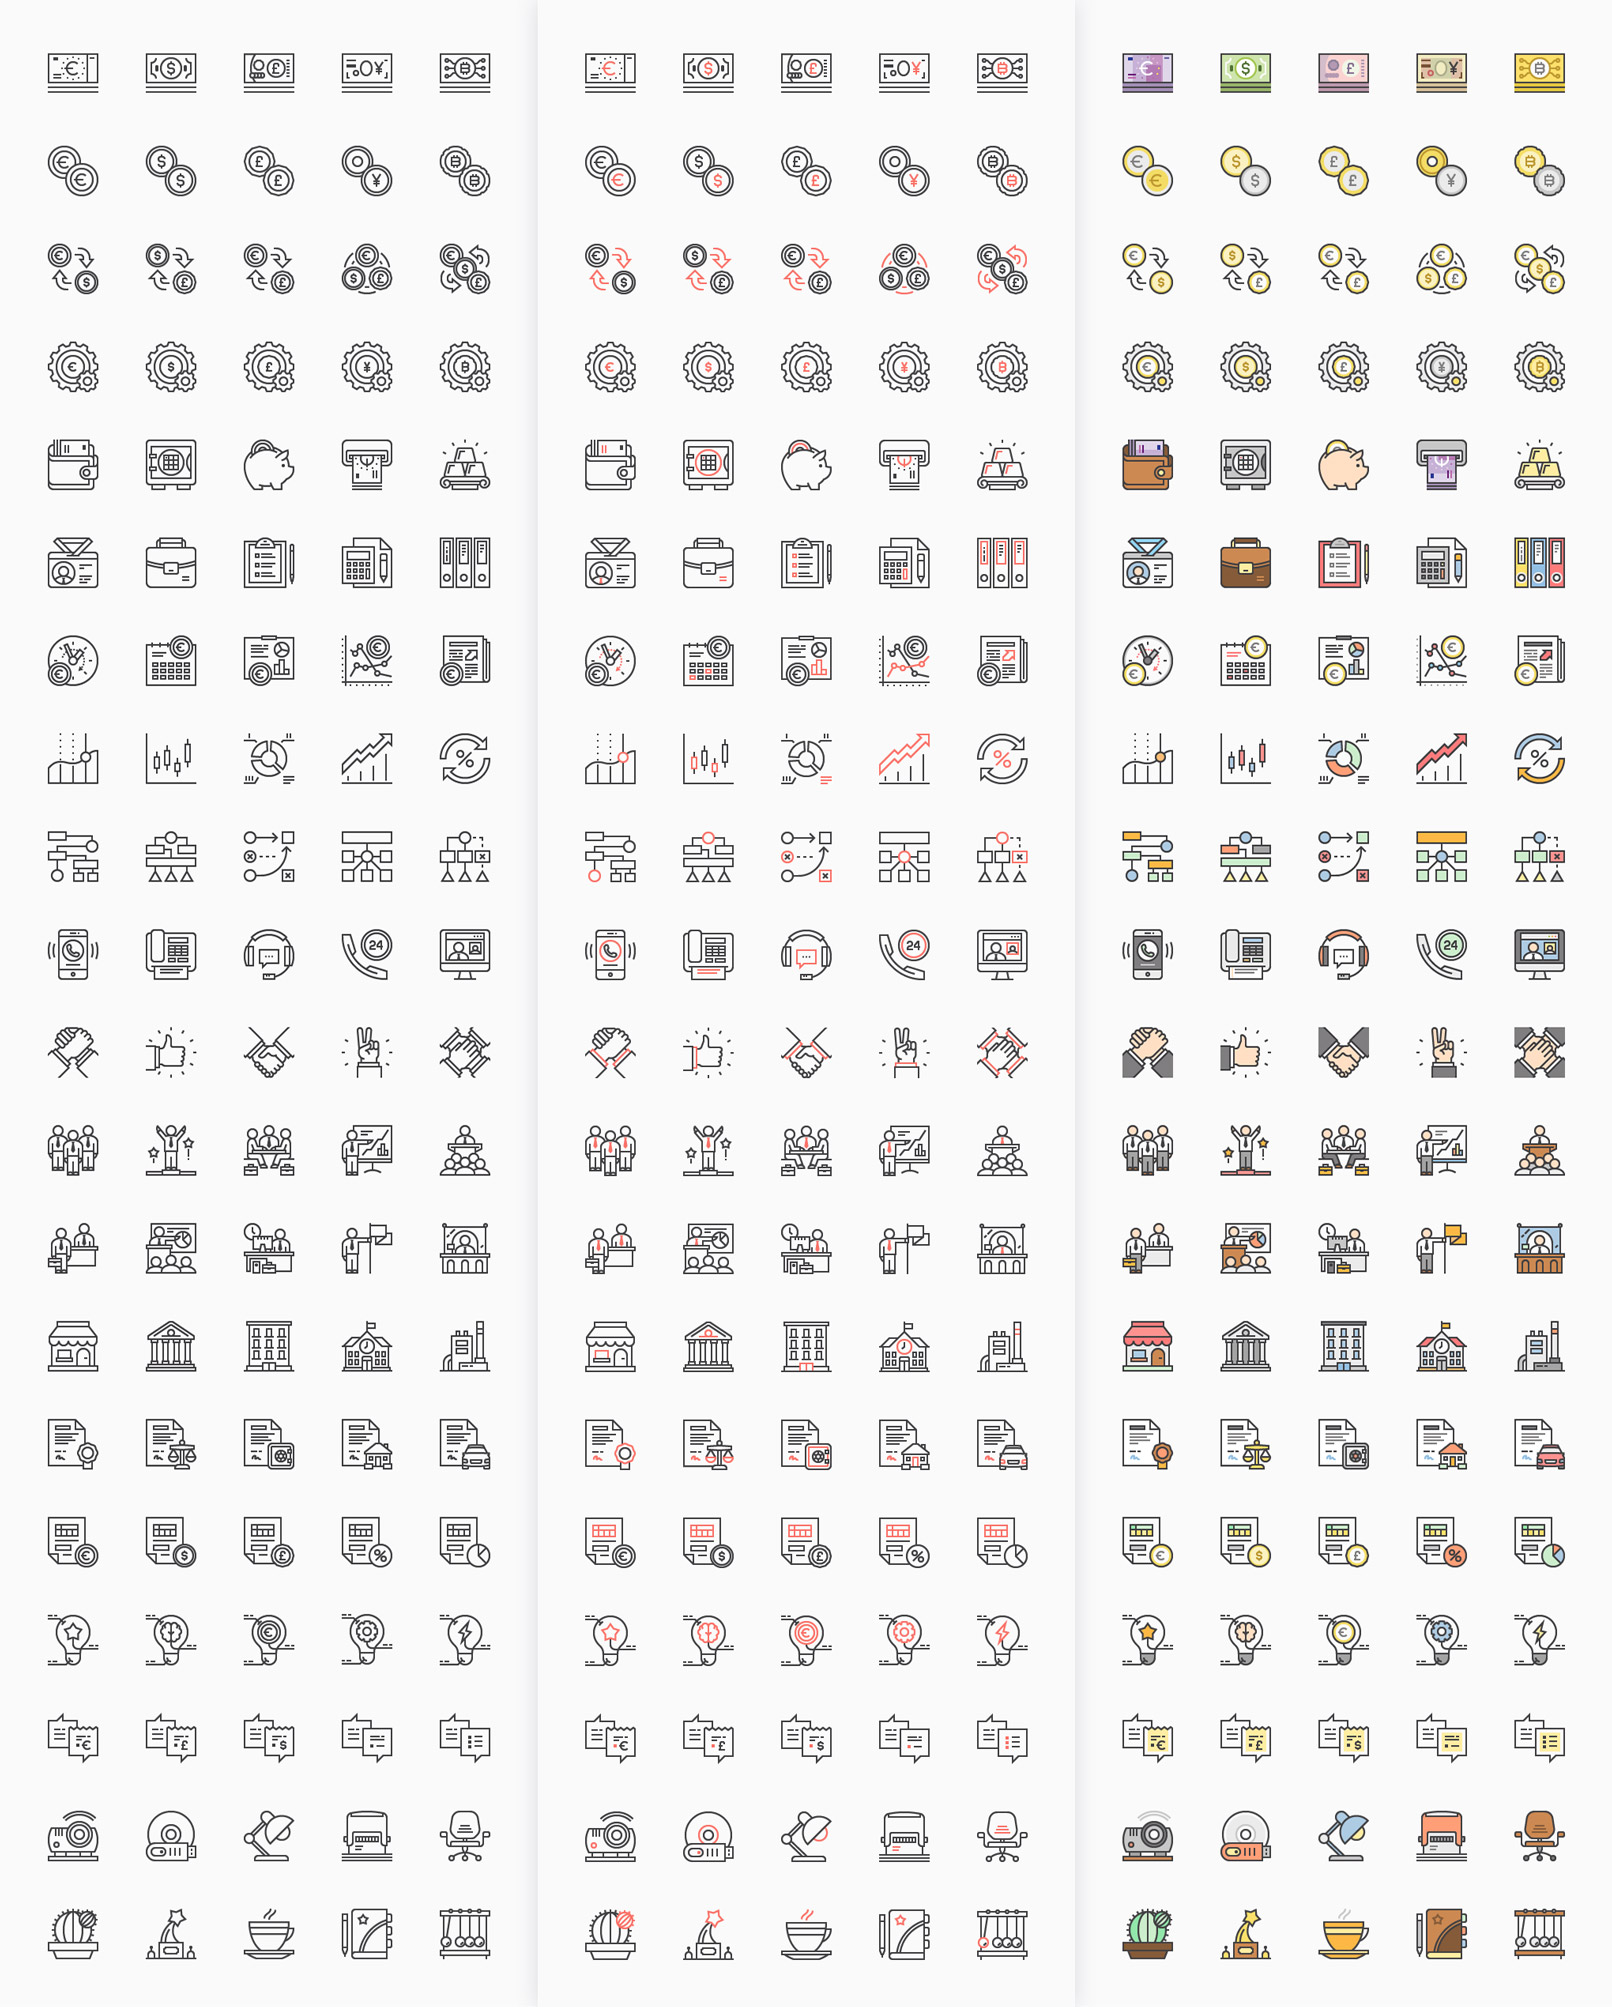 100 Business-Icons zum Download, hier werden drei Farbvarianten mit schwarzer Kontur gezeigt